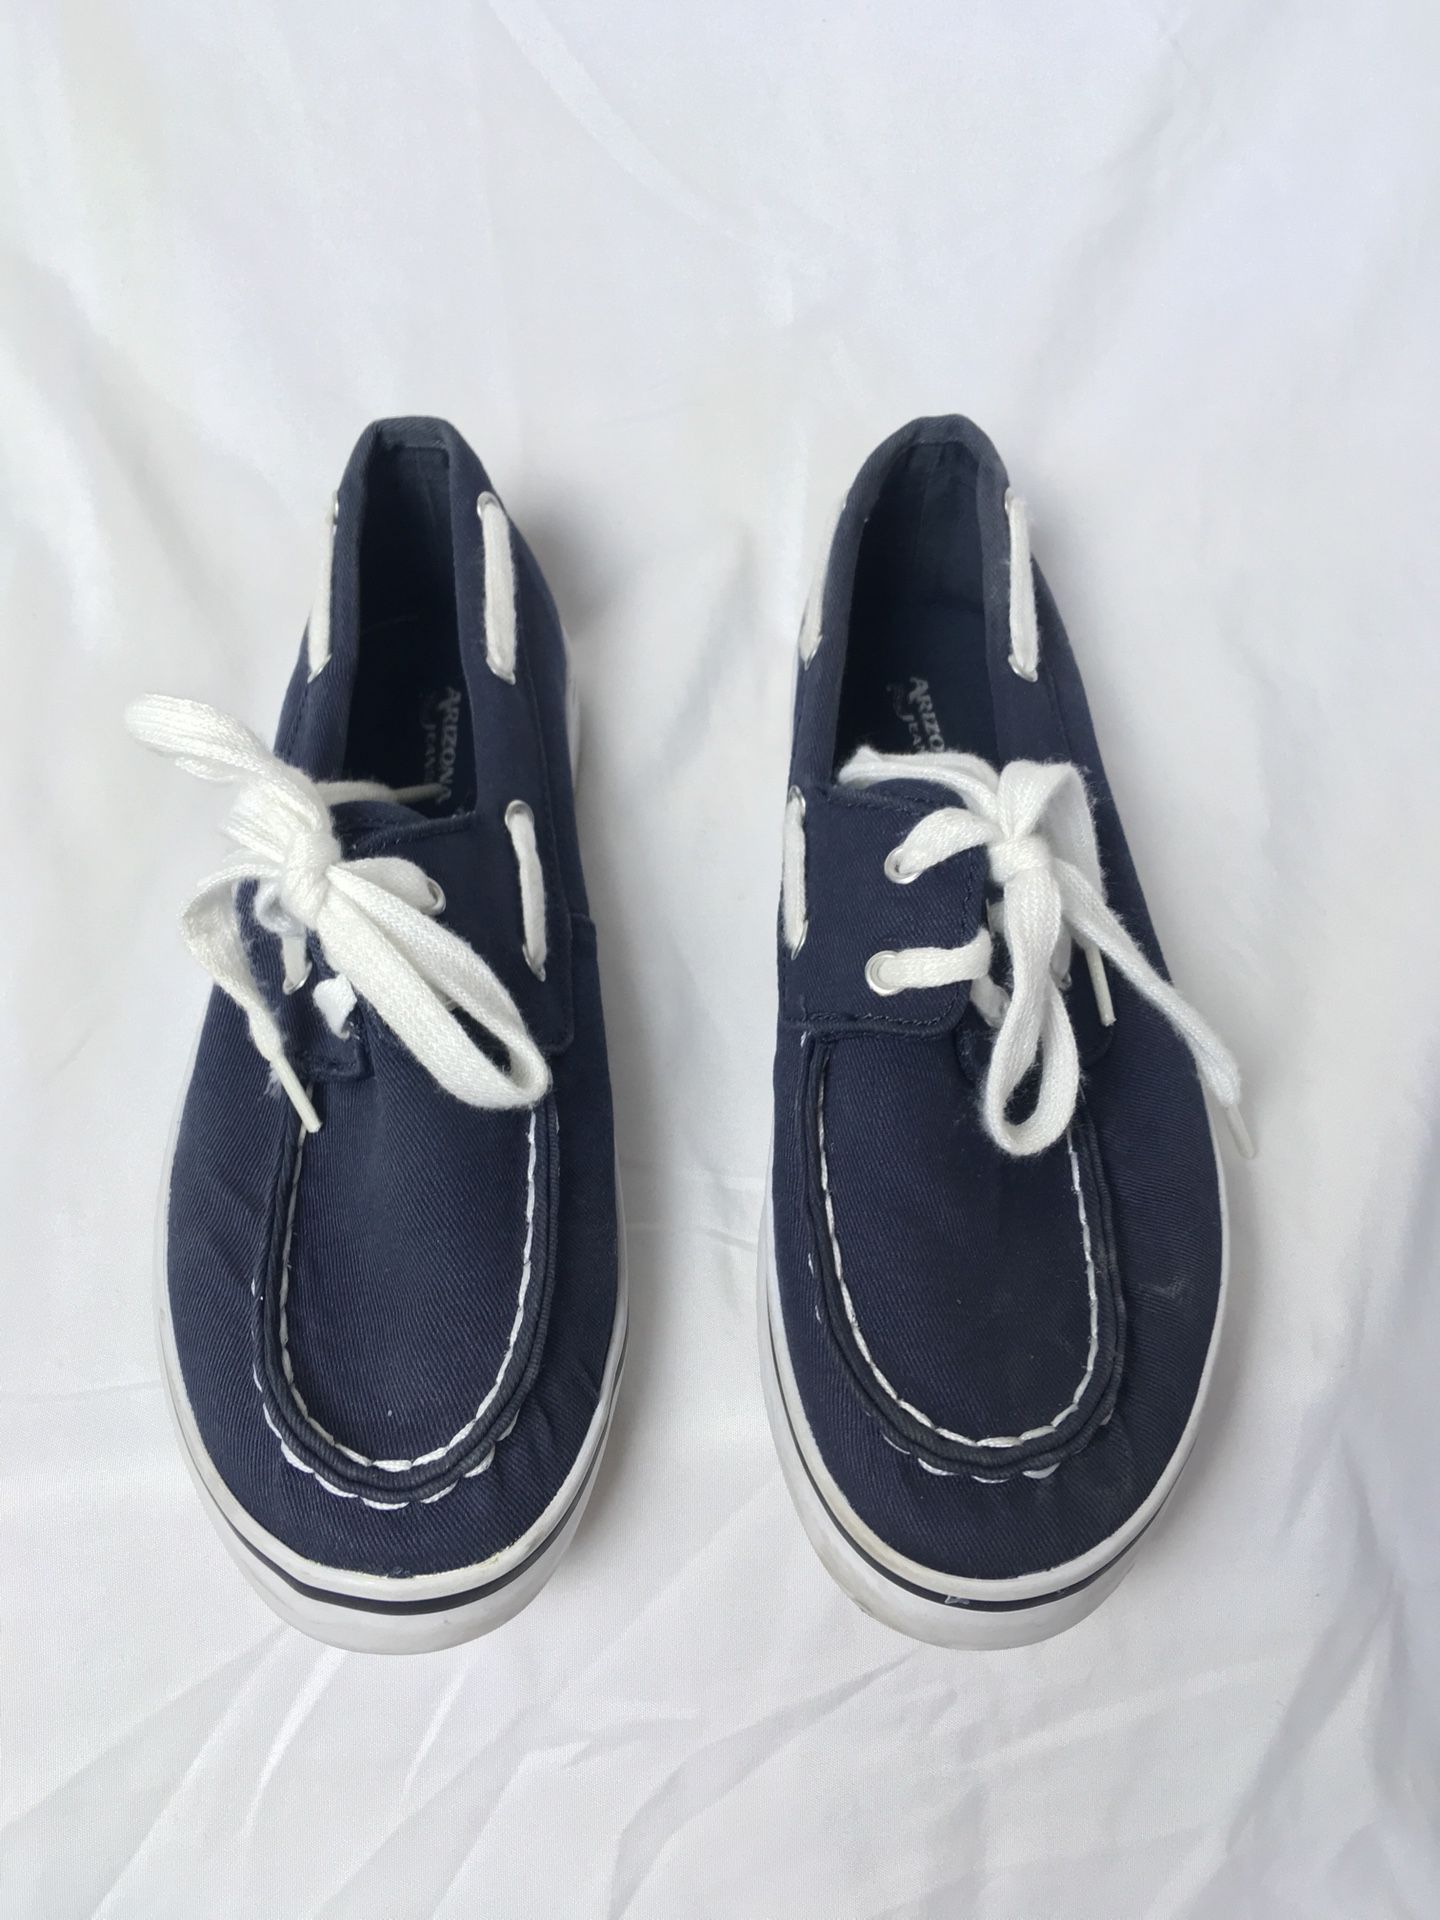 Boy’s Shoes size 4